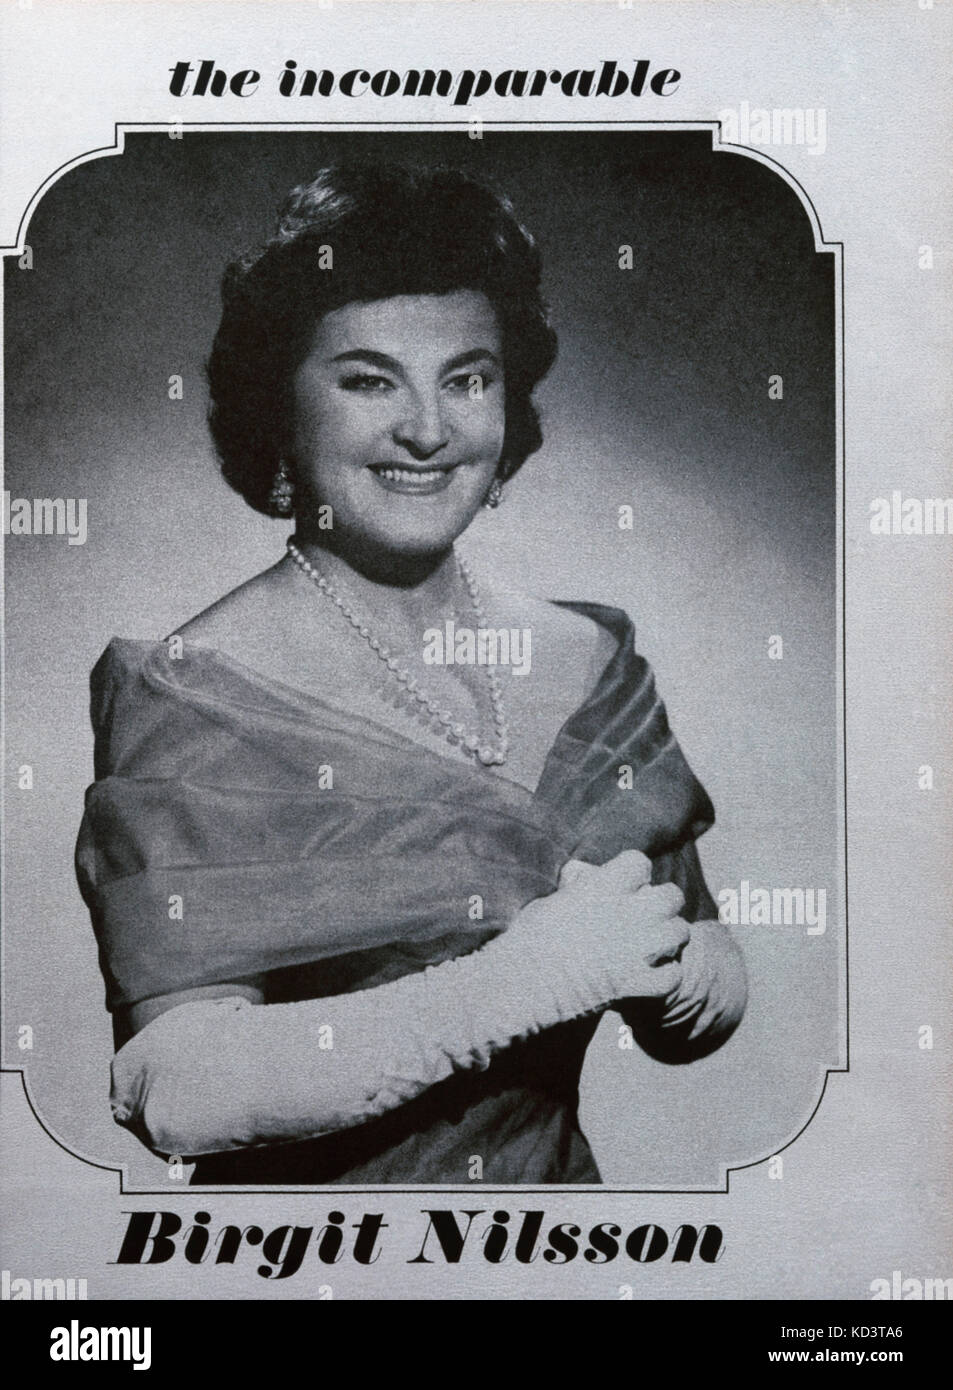 Birgit Nilsson - Porträt der schwedische Sopranistin, Dezember 1963. Werbung. BN: 17 Mai 1918 - 25. Dezember 2005. Musikalische Amerika. Stockfoto